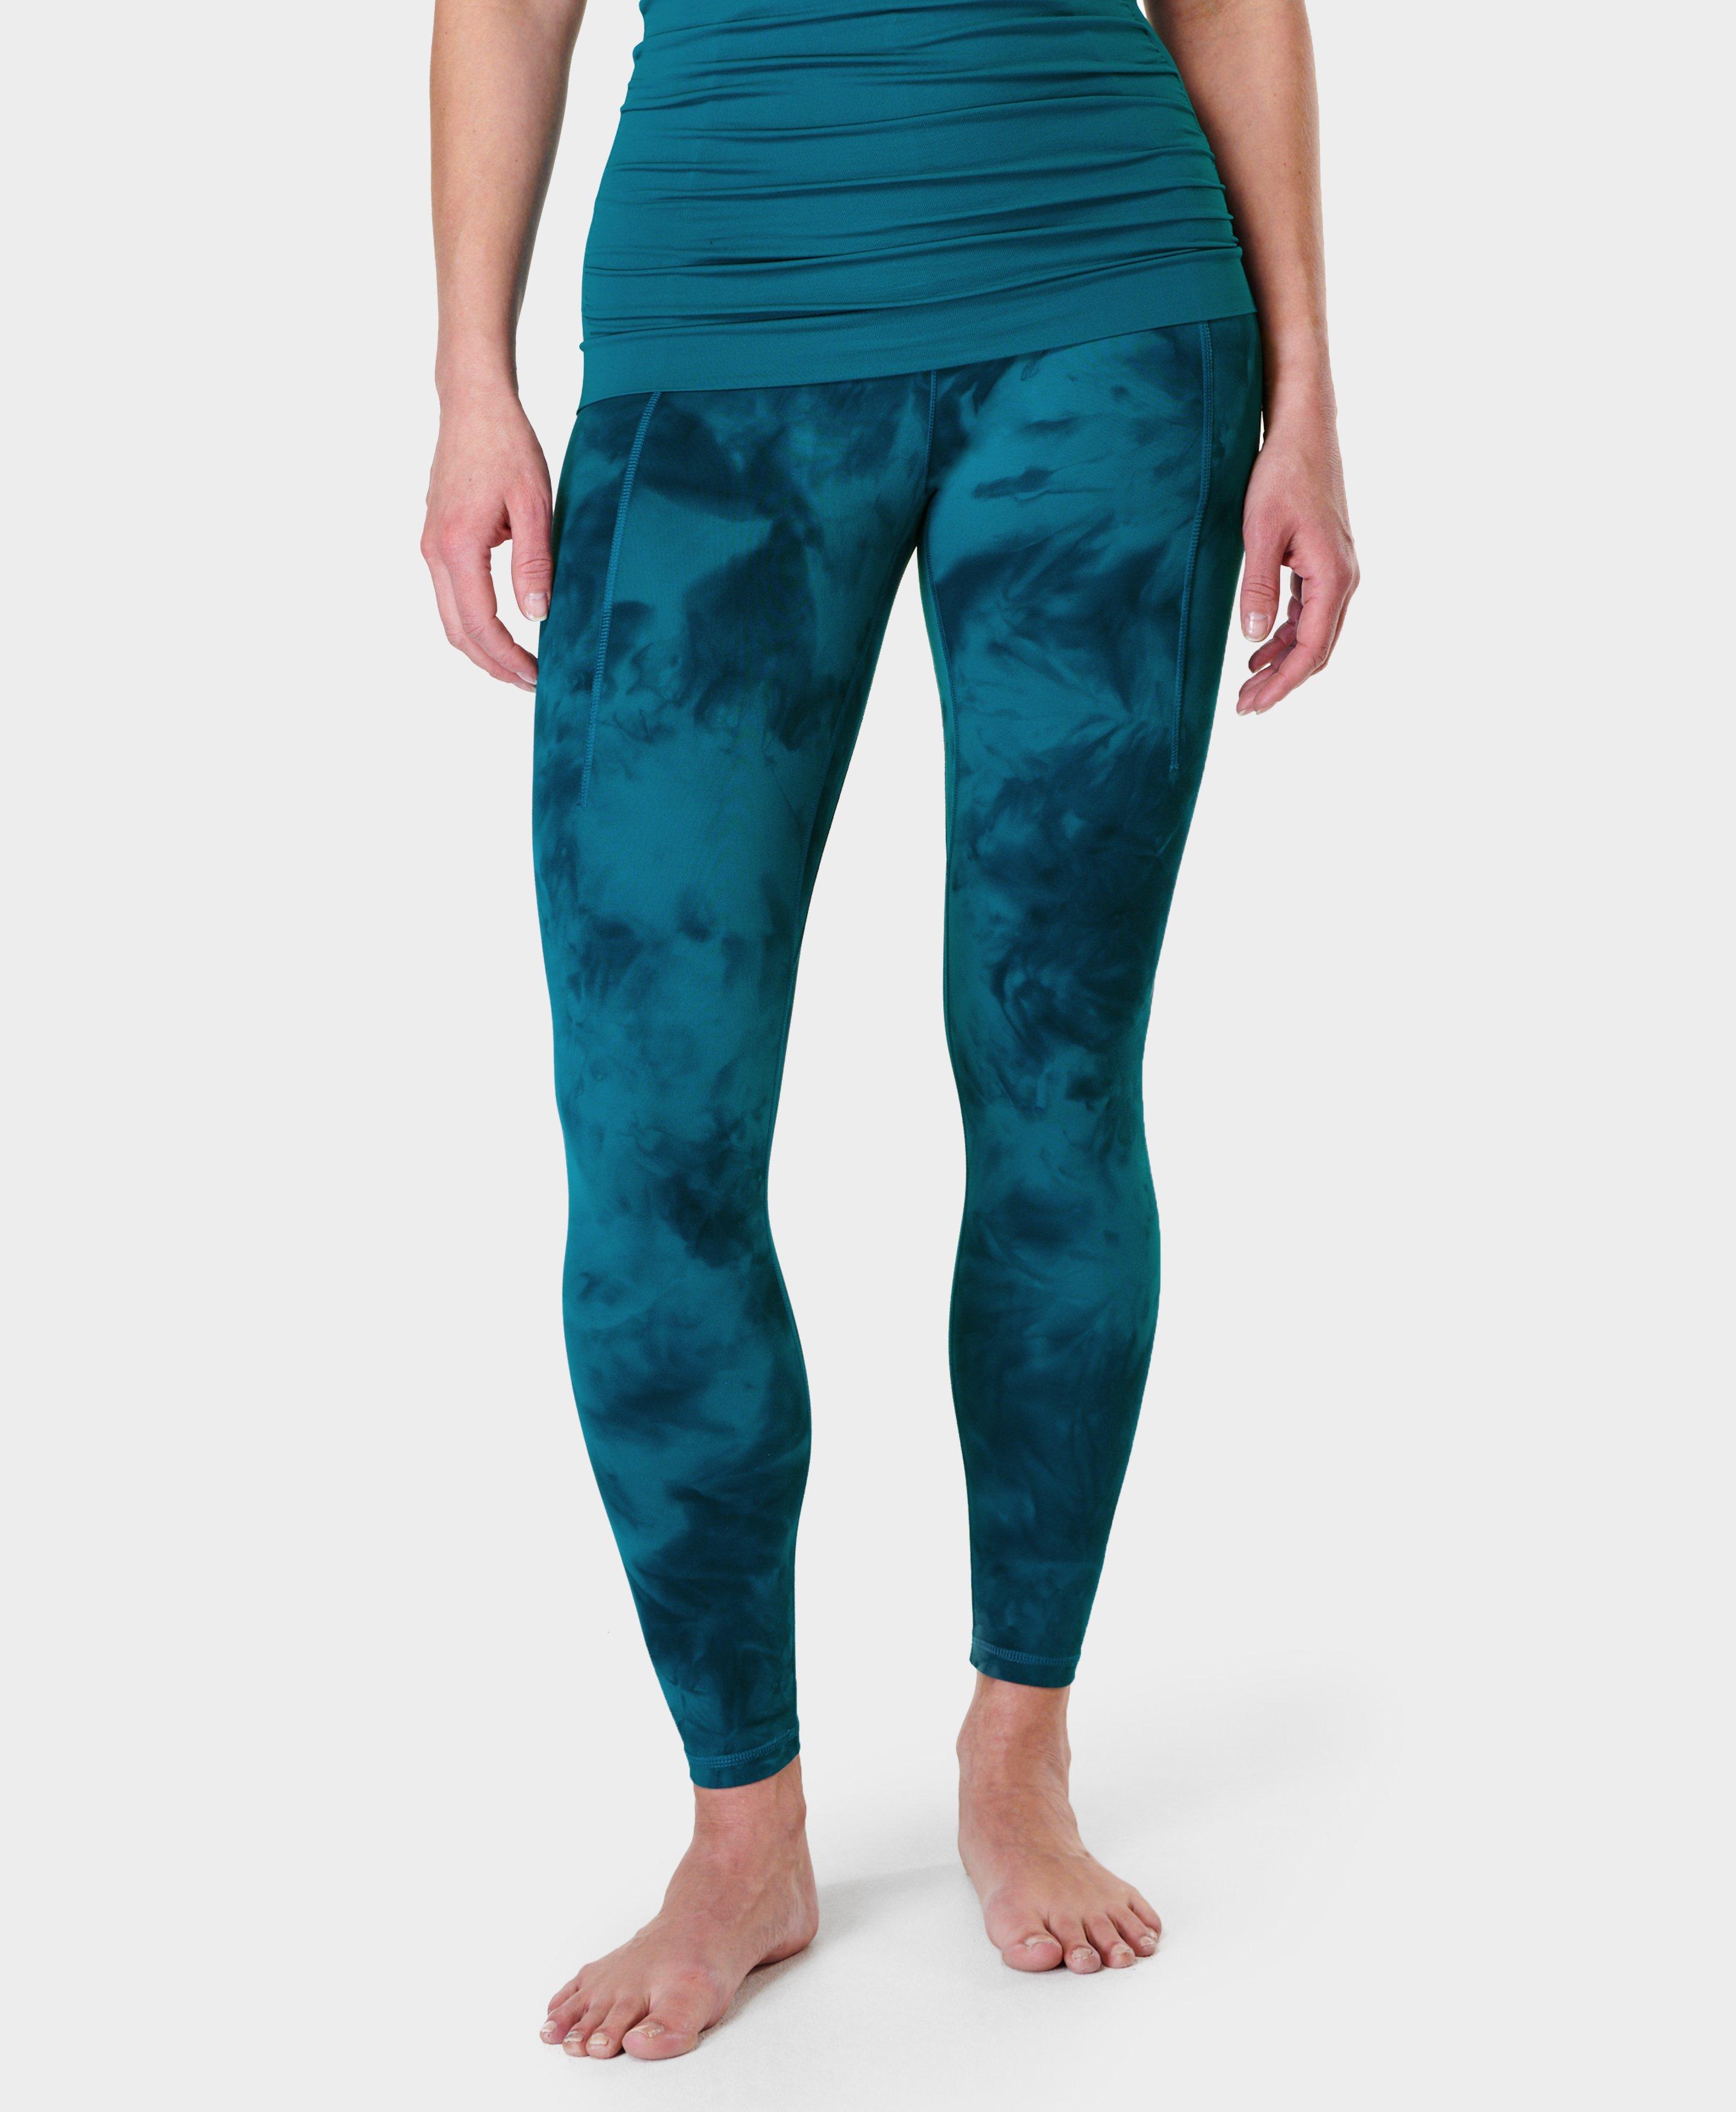 Onzie Long Leggings – Teal Tie Dye - Yoga Hive